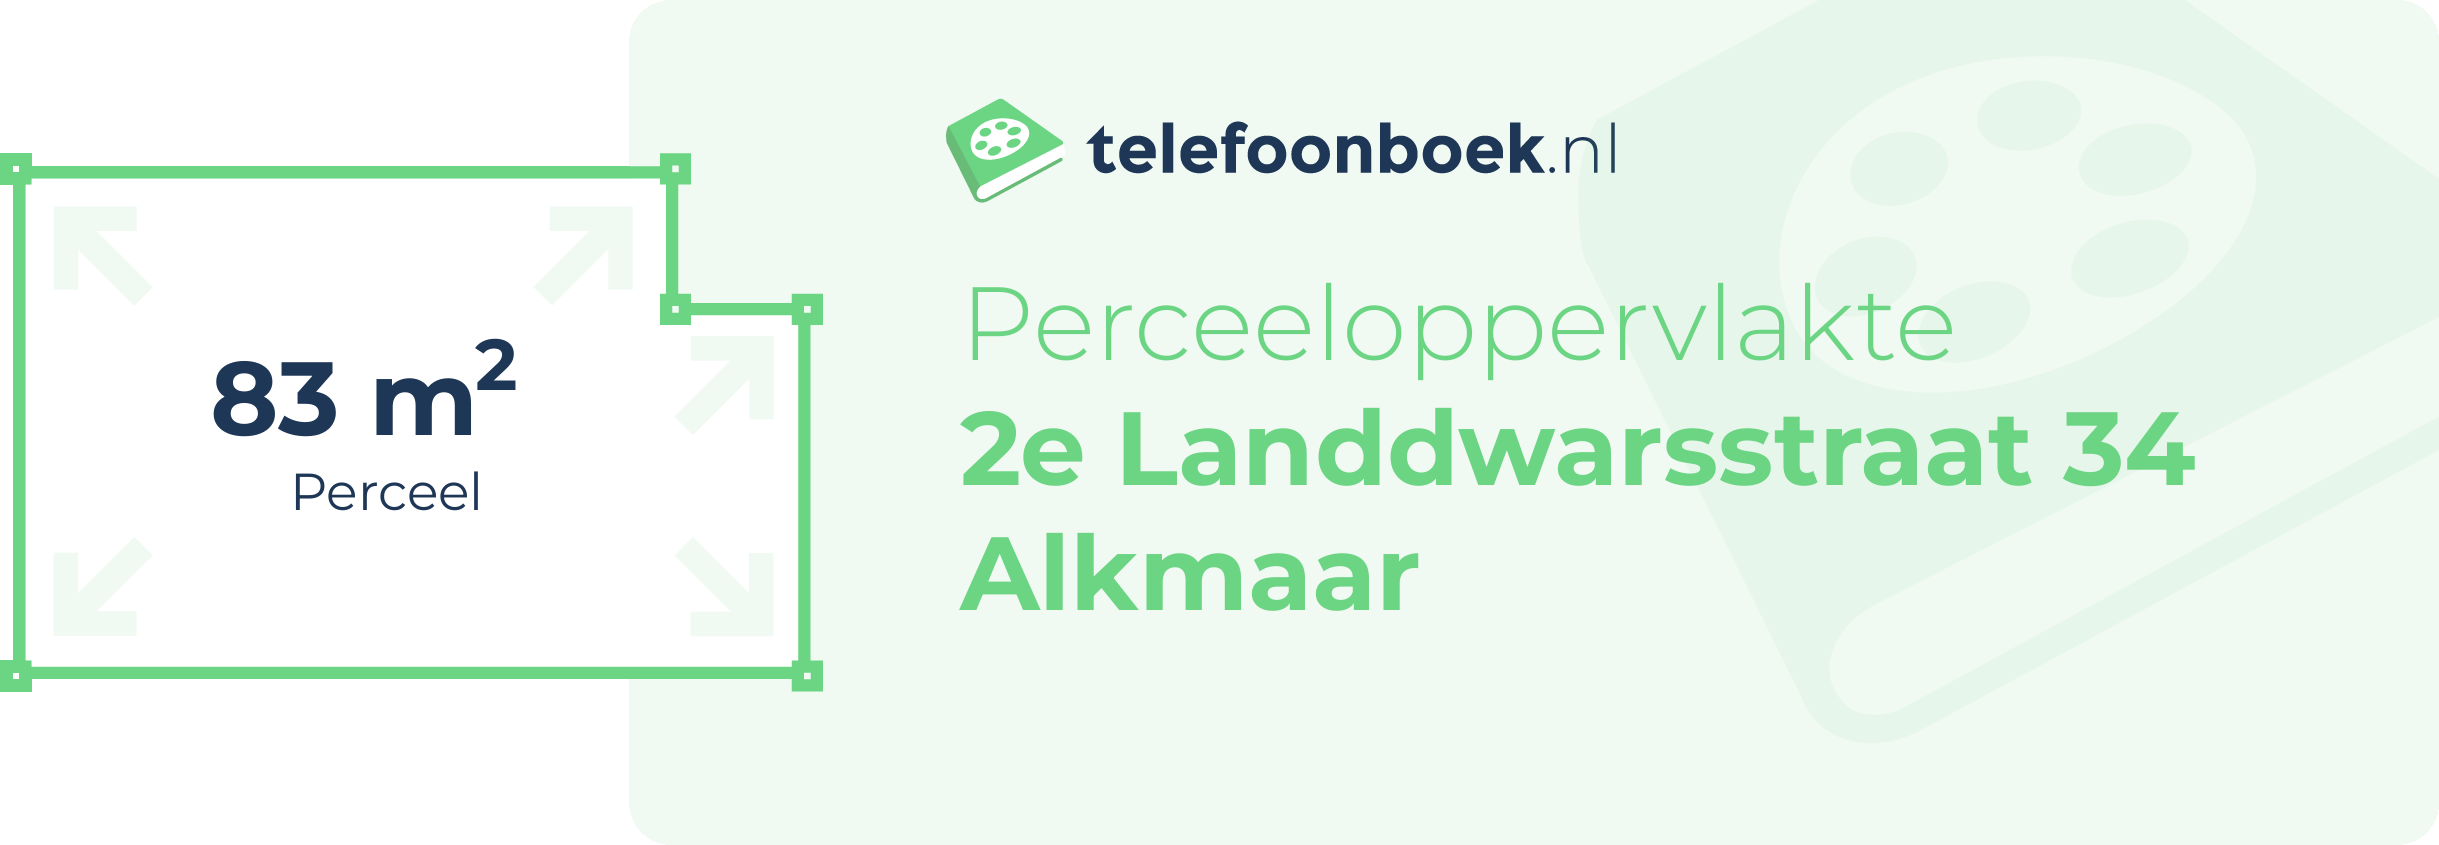 Perceeloppervlakte 2e Landdwarsstraat 34 Alkmaar